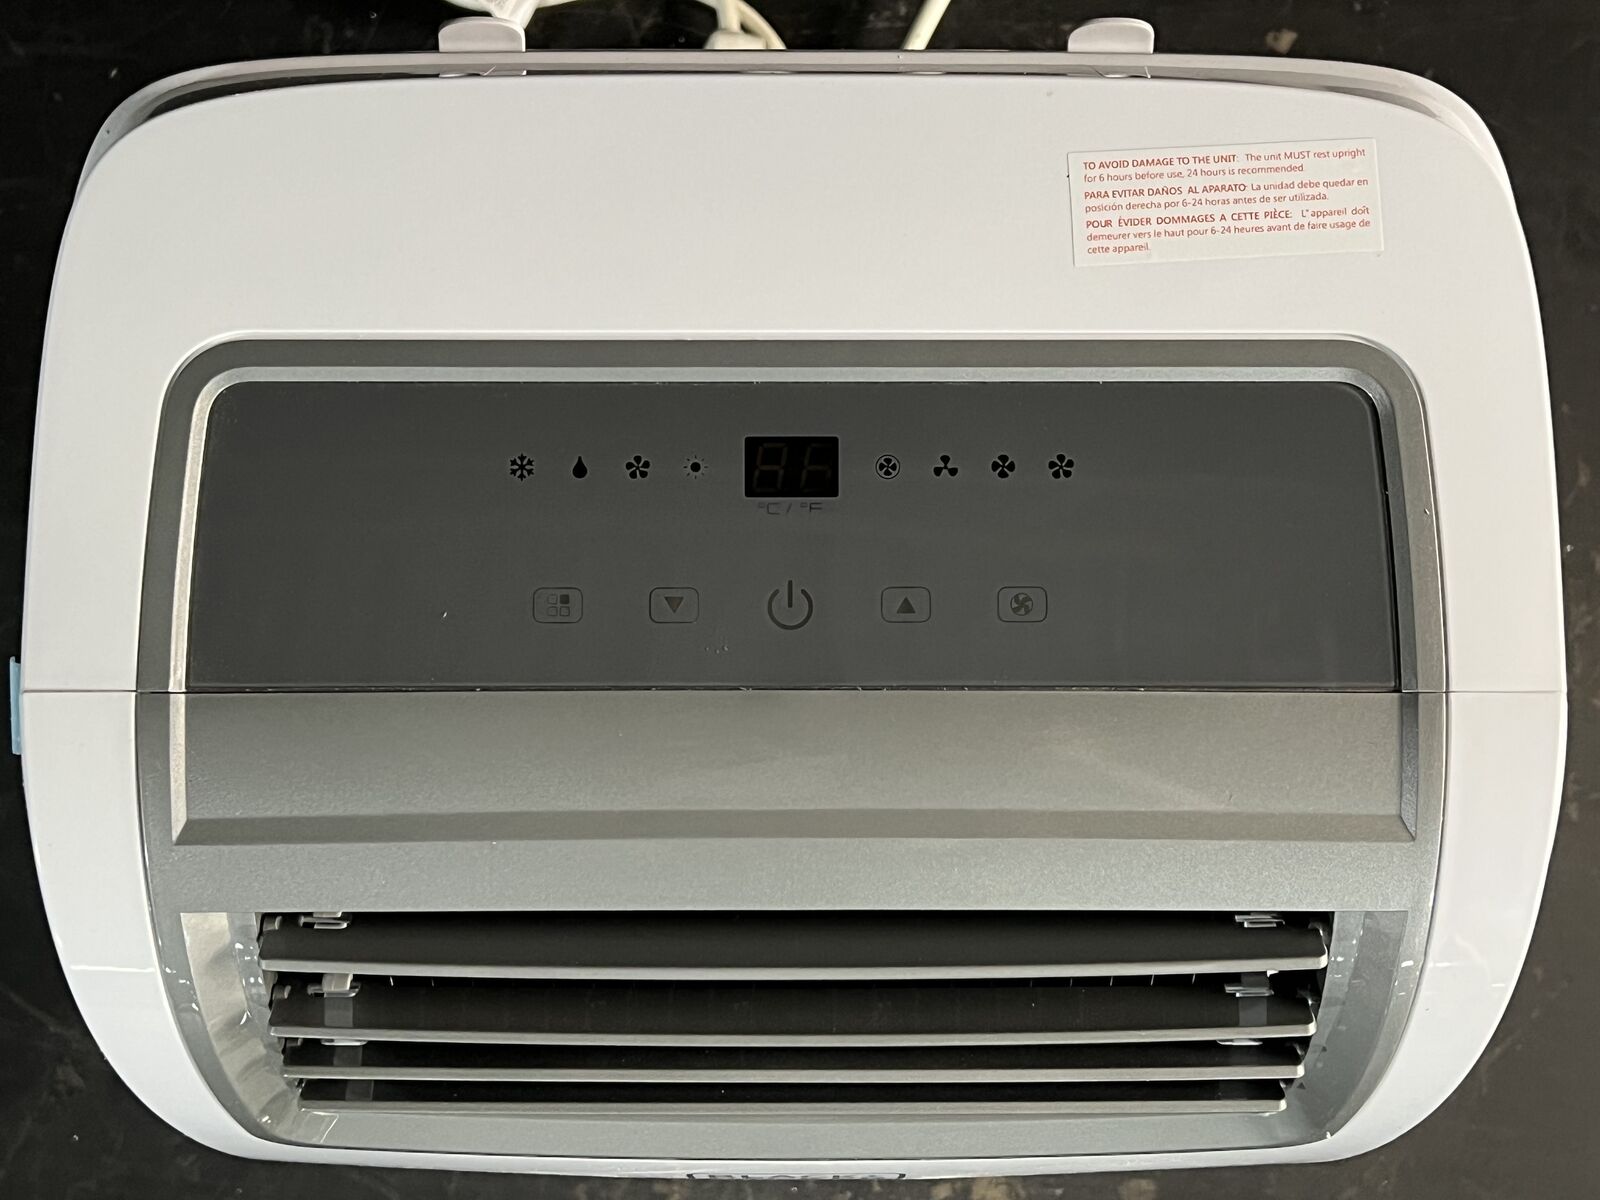 Black + Decker BPACT14HWT 14000 BTU Portable Air Conditioner